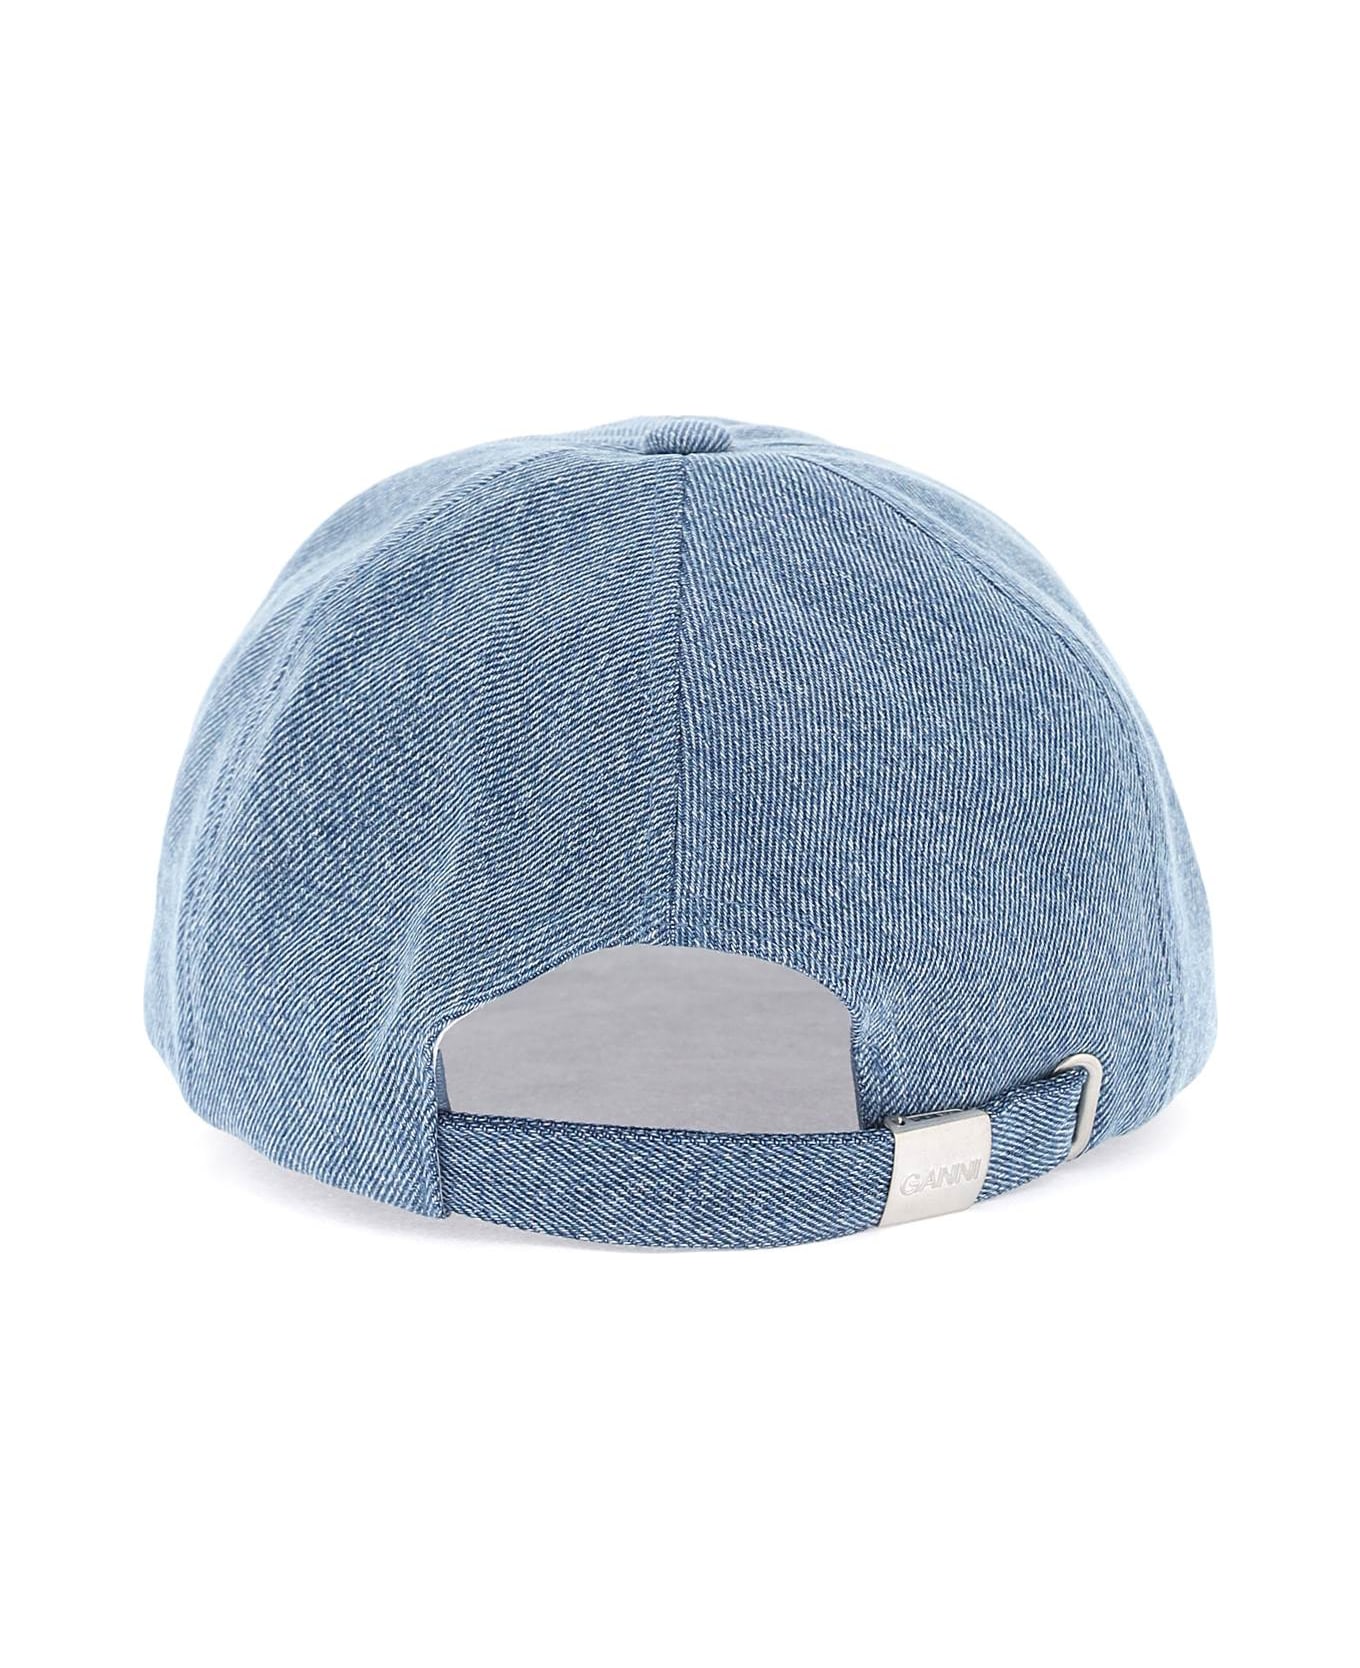 Ganni Light Blue Cotton Hat - DENIM (White)